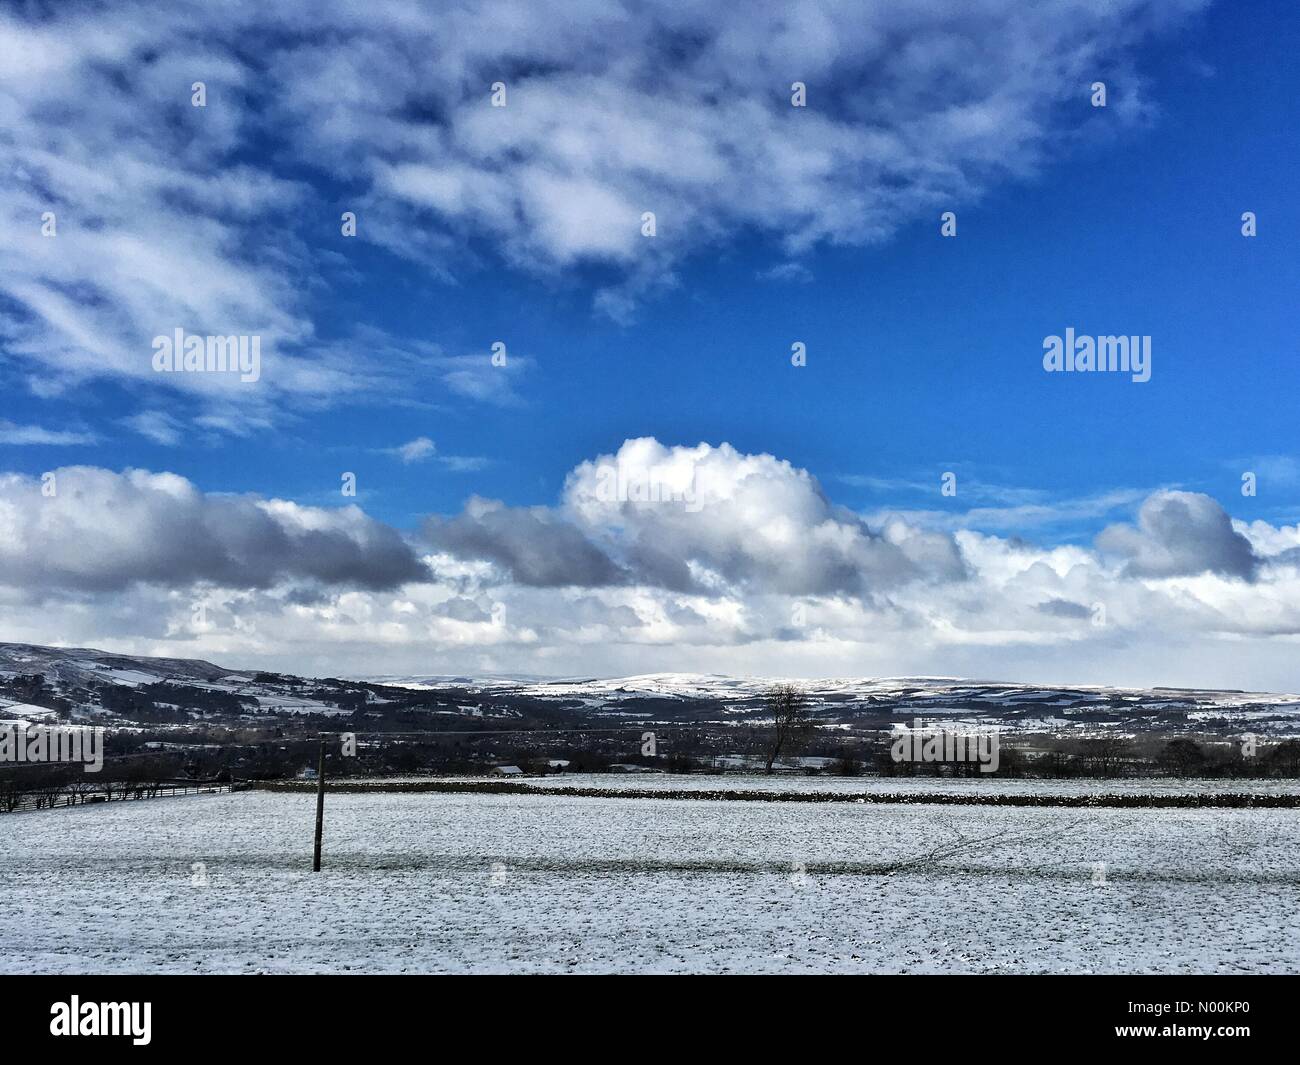 Un mélange de ciel clair et de neige Otley West Yorkshire Météo Royaume-Uni Banque D'Images